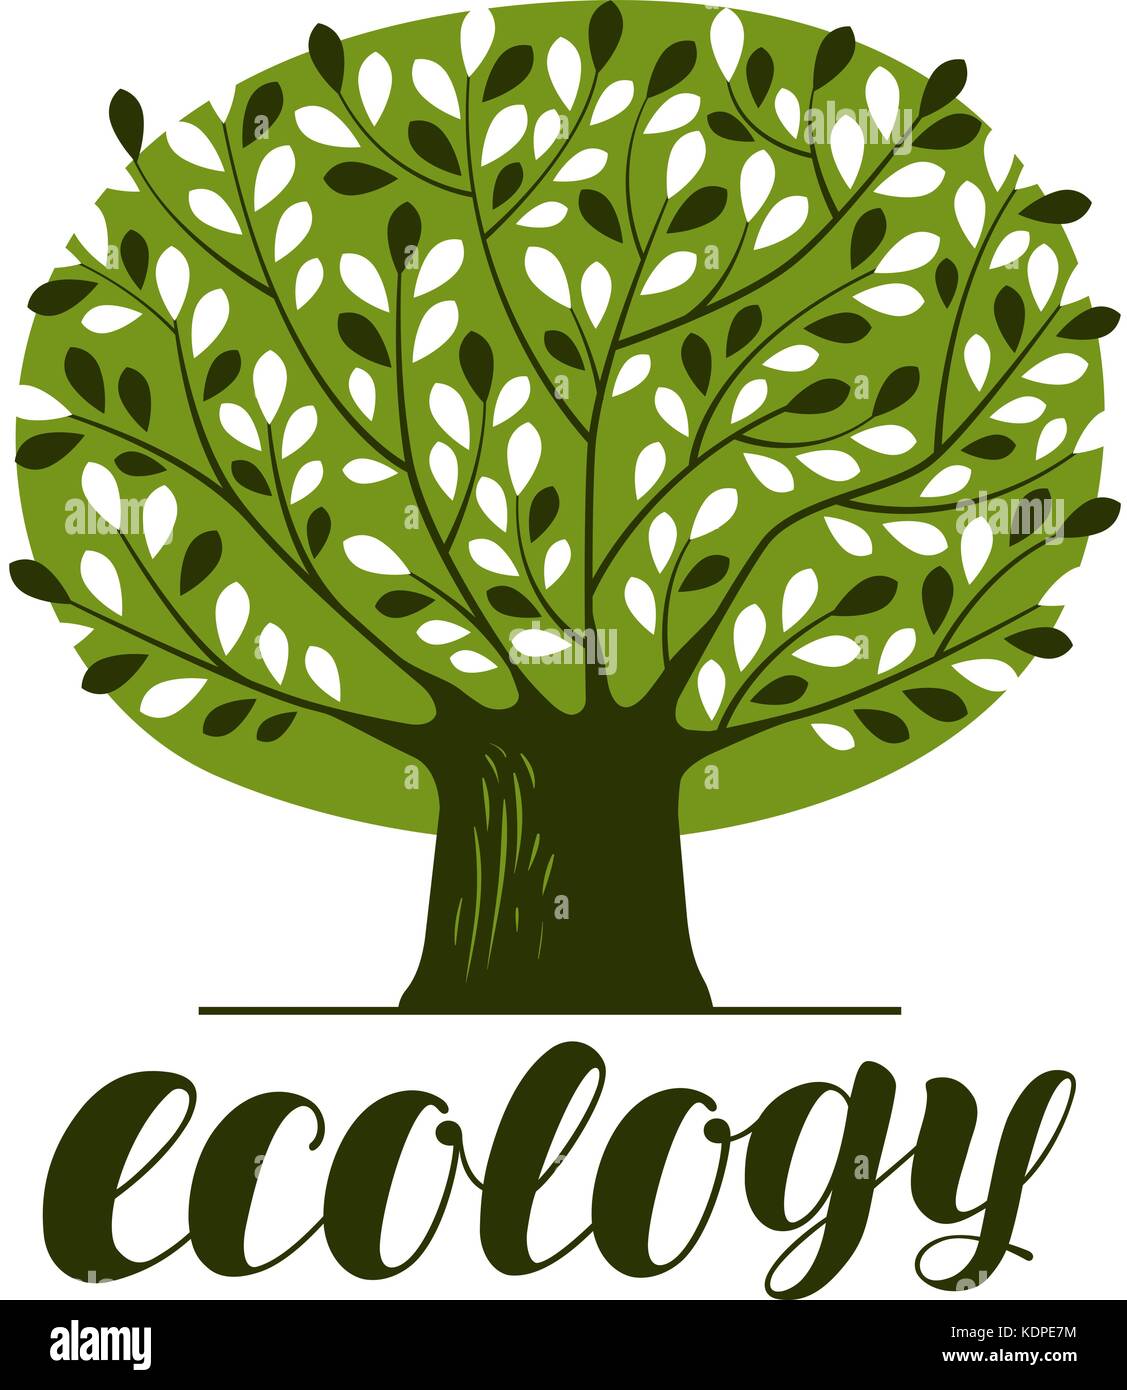 Natur-, Ökologie-, Wald-Logo oder -Etikett. Abstrakter grüner Baum mit Blättern. Dekorative Vektorillustration Stock Vektor